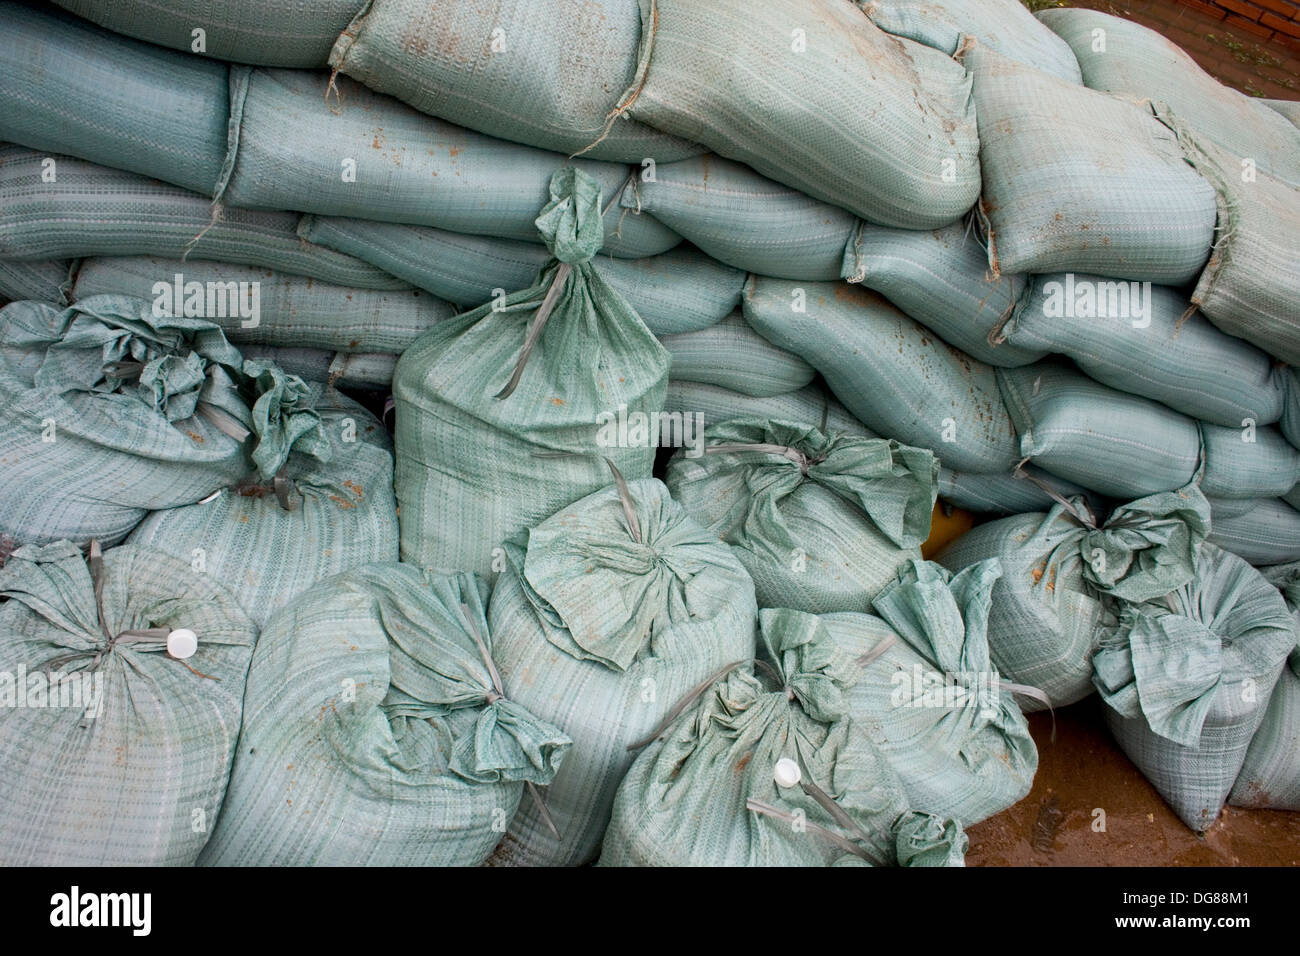 Des sacs sont empilés sur la rive du Mékong pour prévenir les inondations dans la région de Kampong Cham, au Cambodge. Banque D'Images